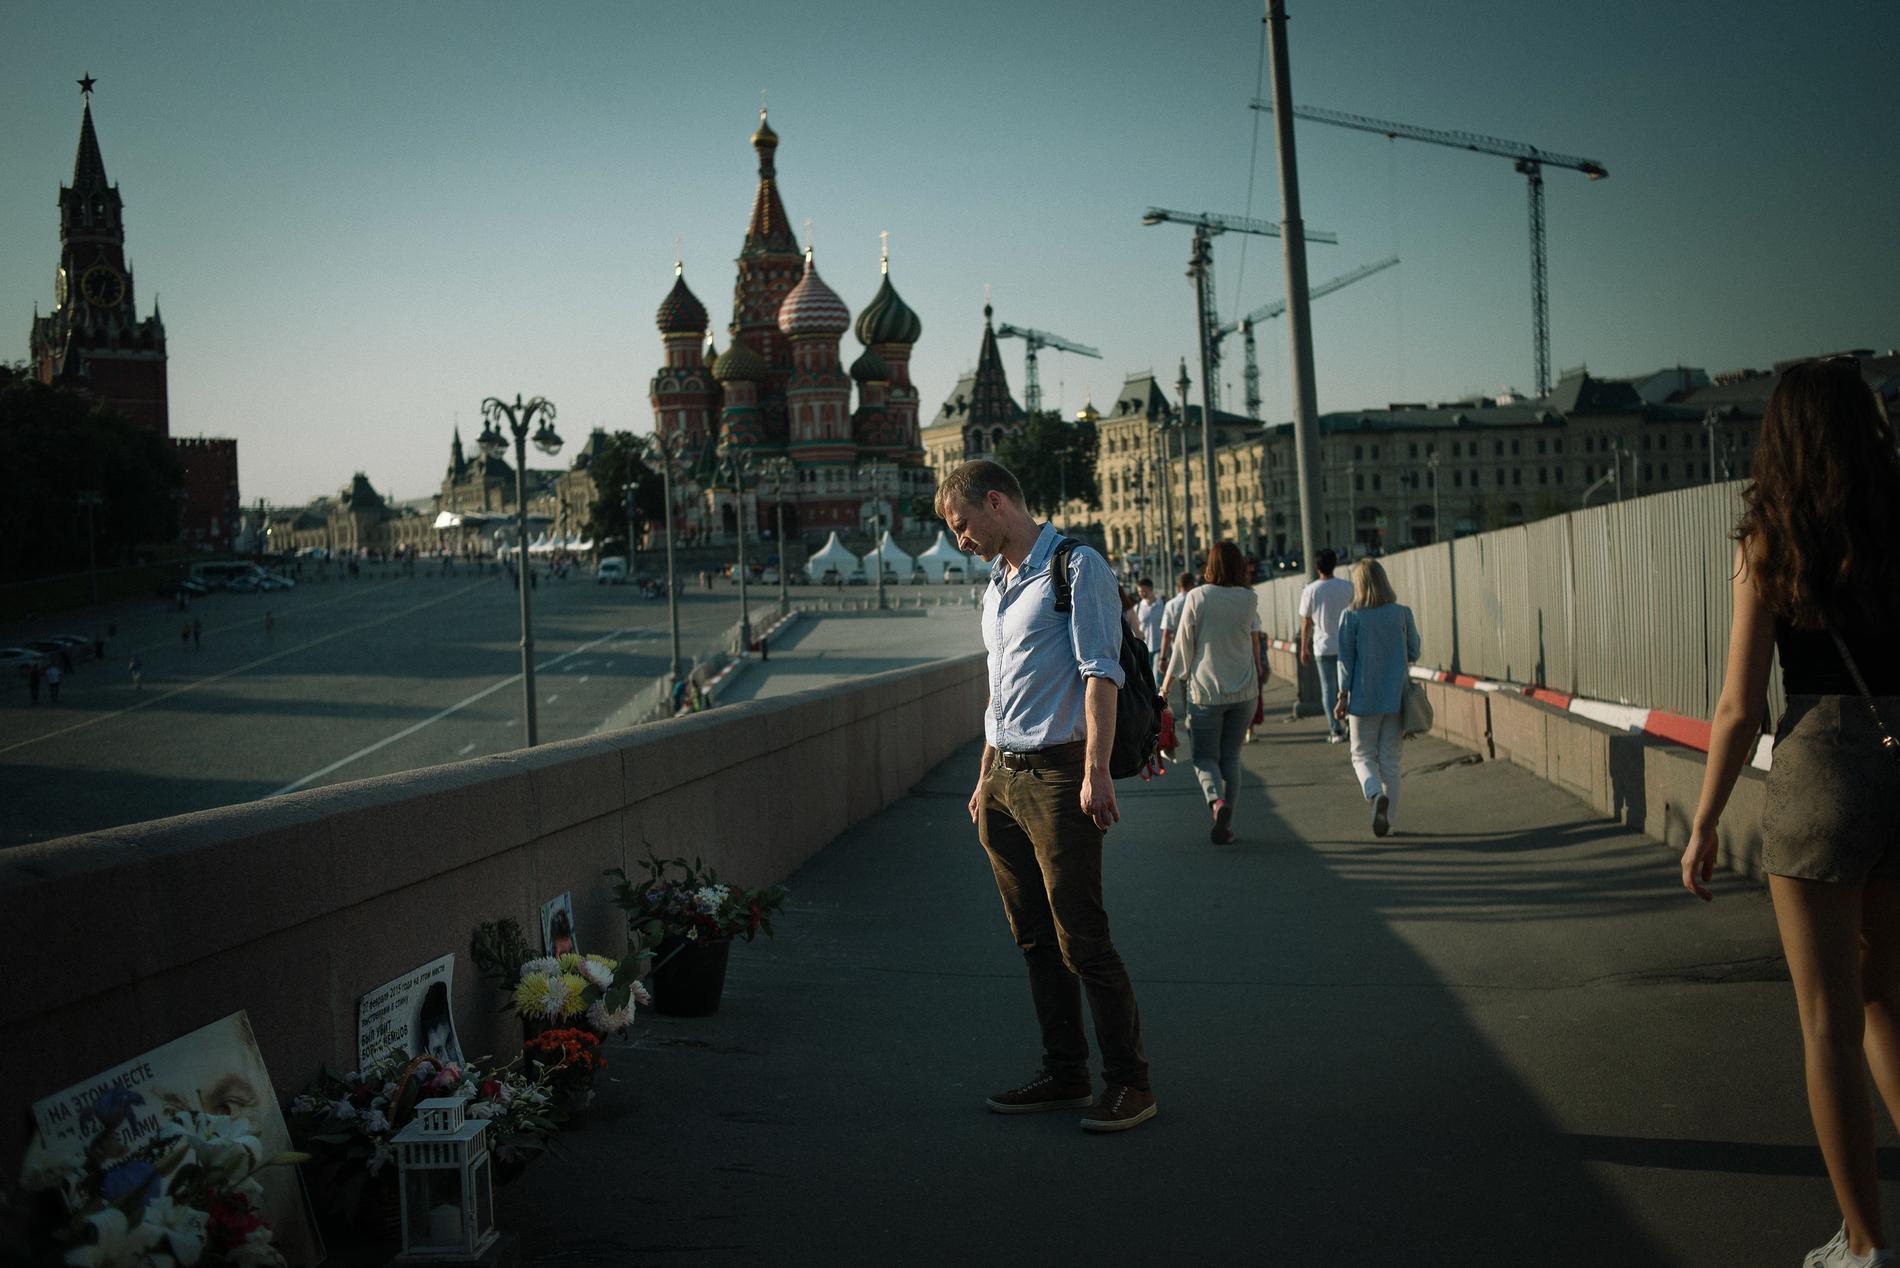 Aleksej Sachnin på platsen där vännen och liberale politikern Boris Nemtsov sköts 2015. De kände varandra från proteströrelsen mot Putin 2011-2012. Nemtsov försökte bland annat med hjälp av Carl Bildt smuggla ut den fängslade Sergej Udaltsov.